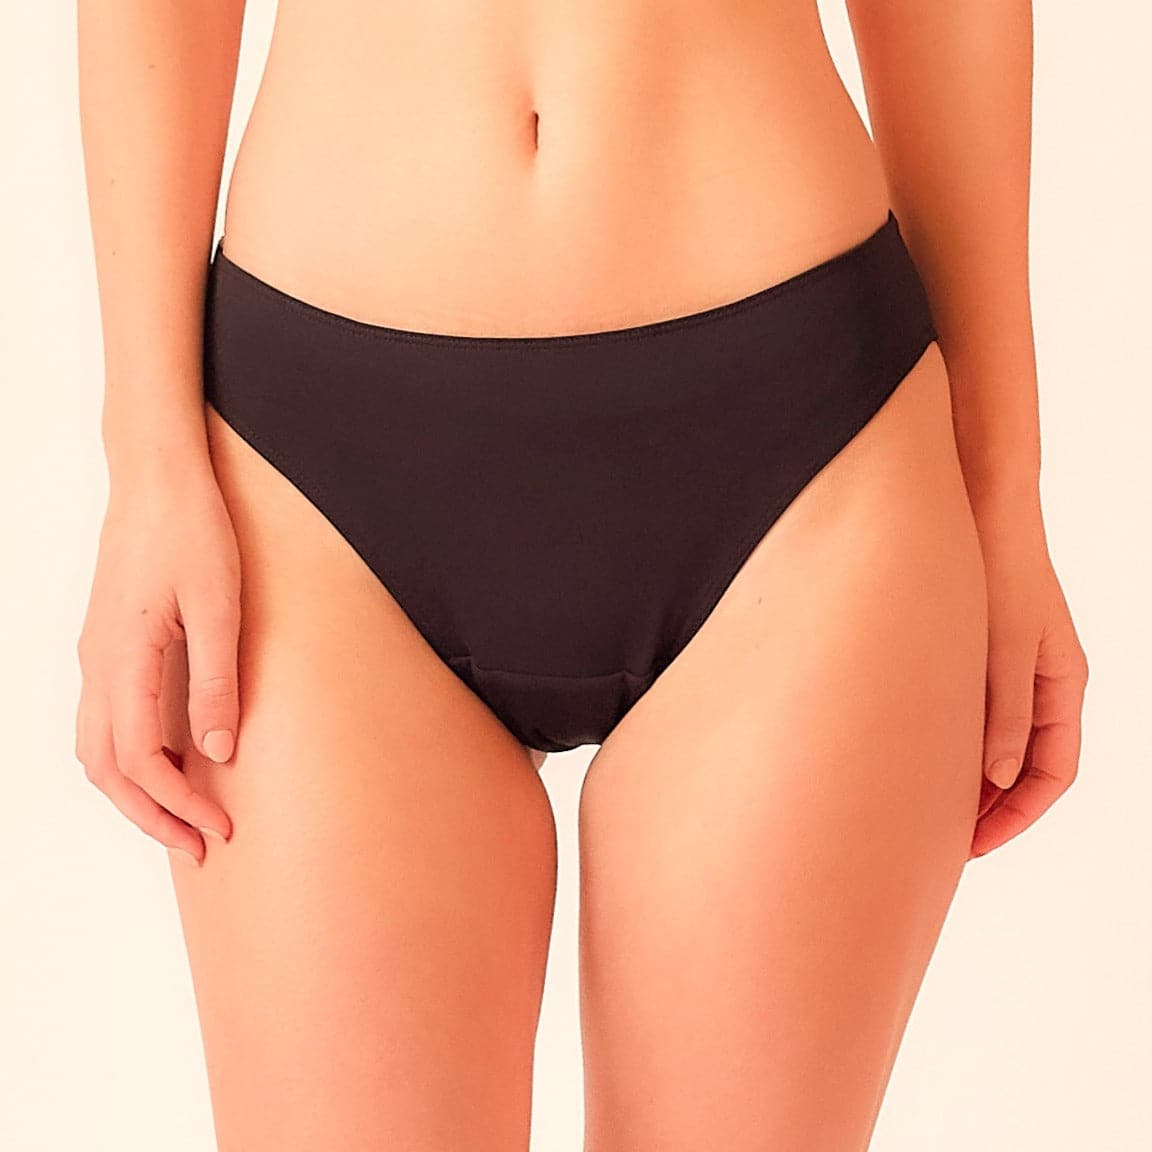 Bundle: 3x Period Underwear for RM 298 – PinkRabbit